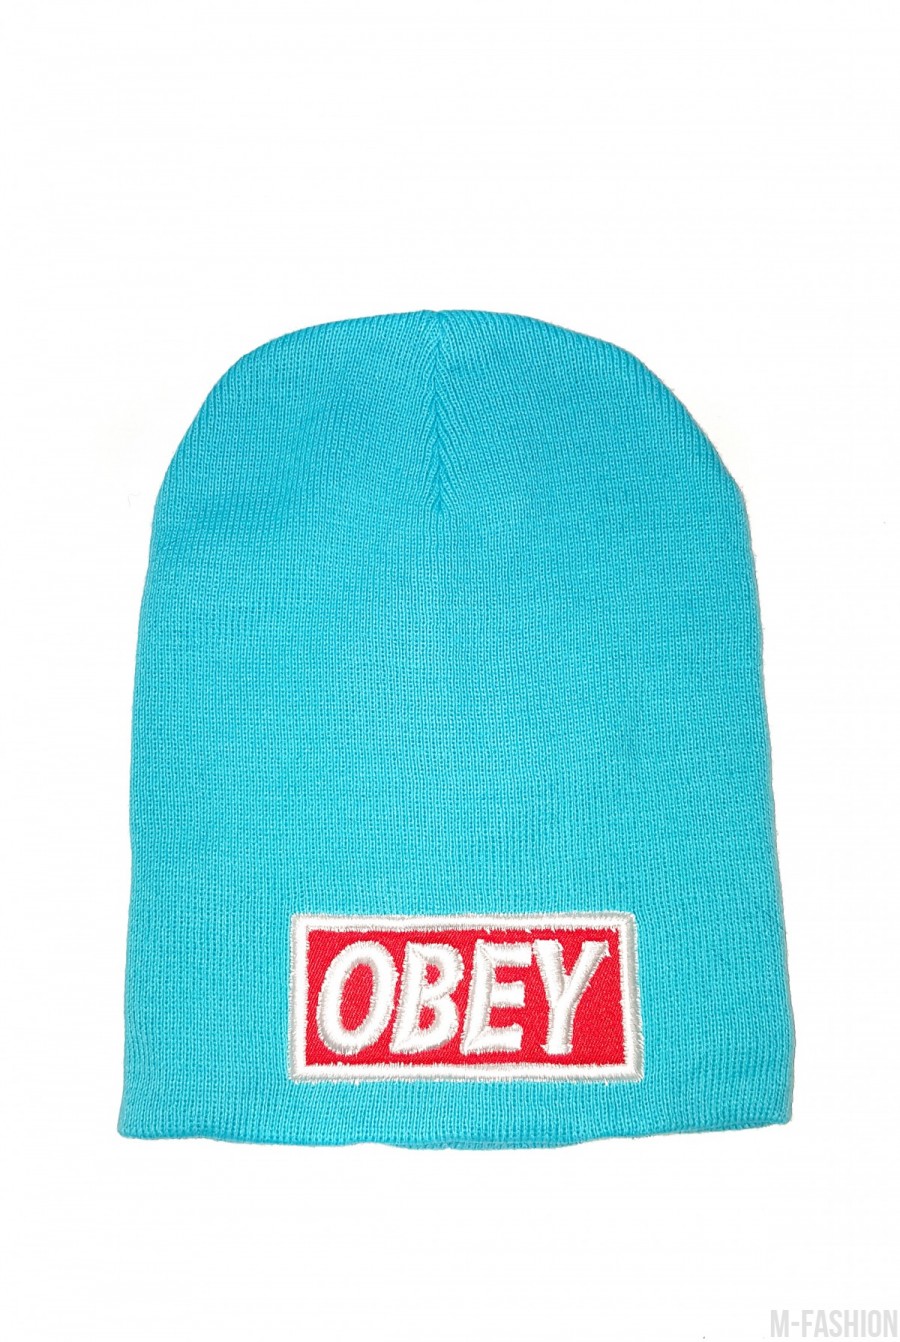 Голубая шапка с красно-белой вышивкой OBEY - Фото 1